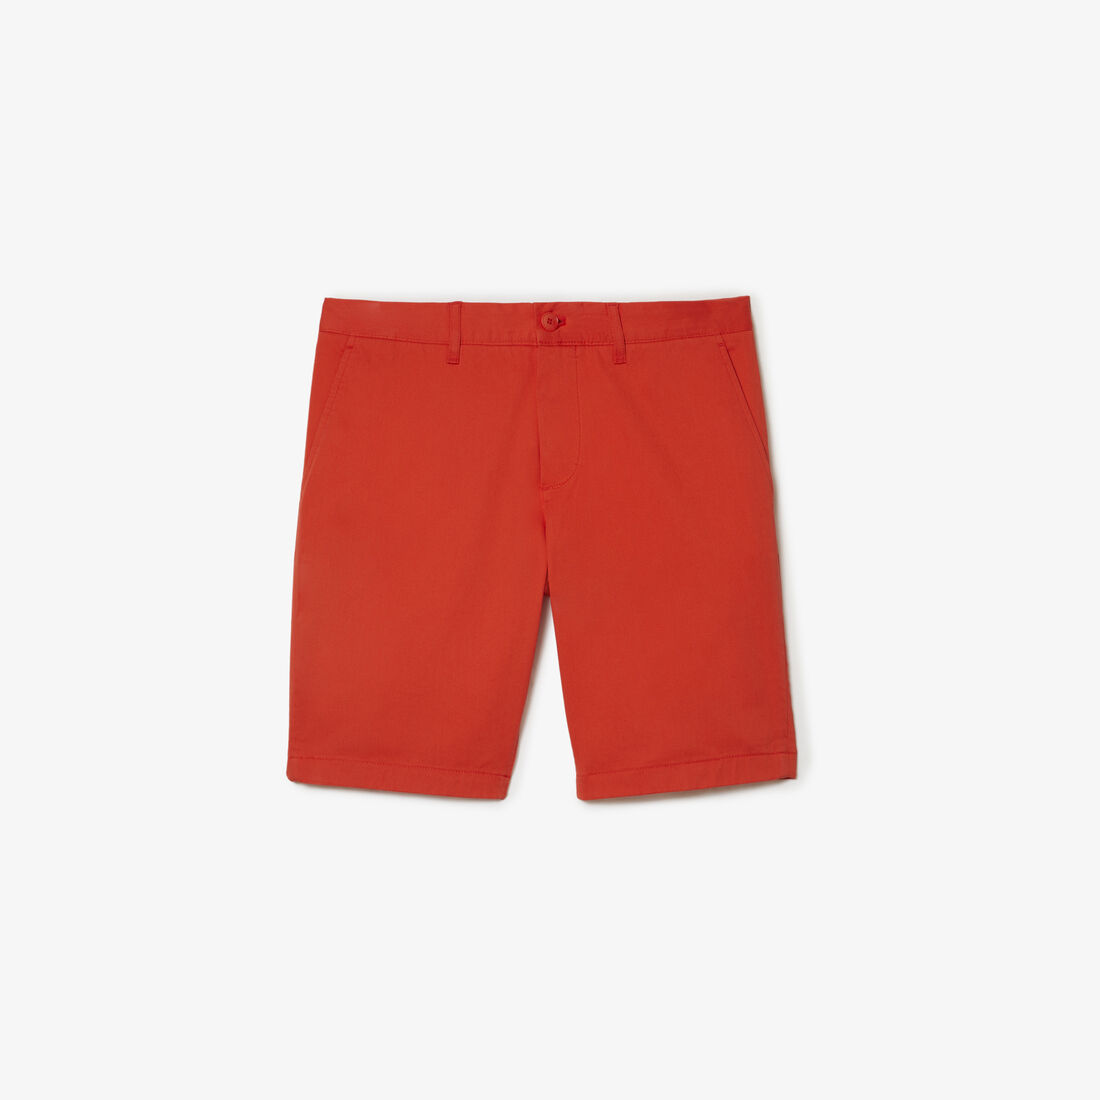 Lacoste Slim Fit Stretch Baumwoll Bermuda Kurze Hose Herren Orange | ENFK-53682